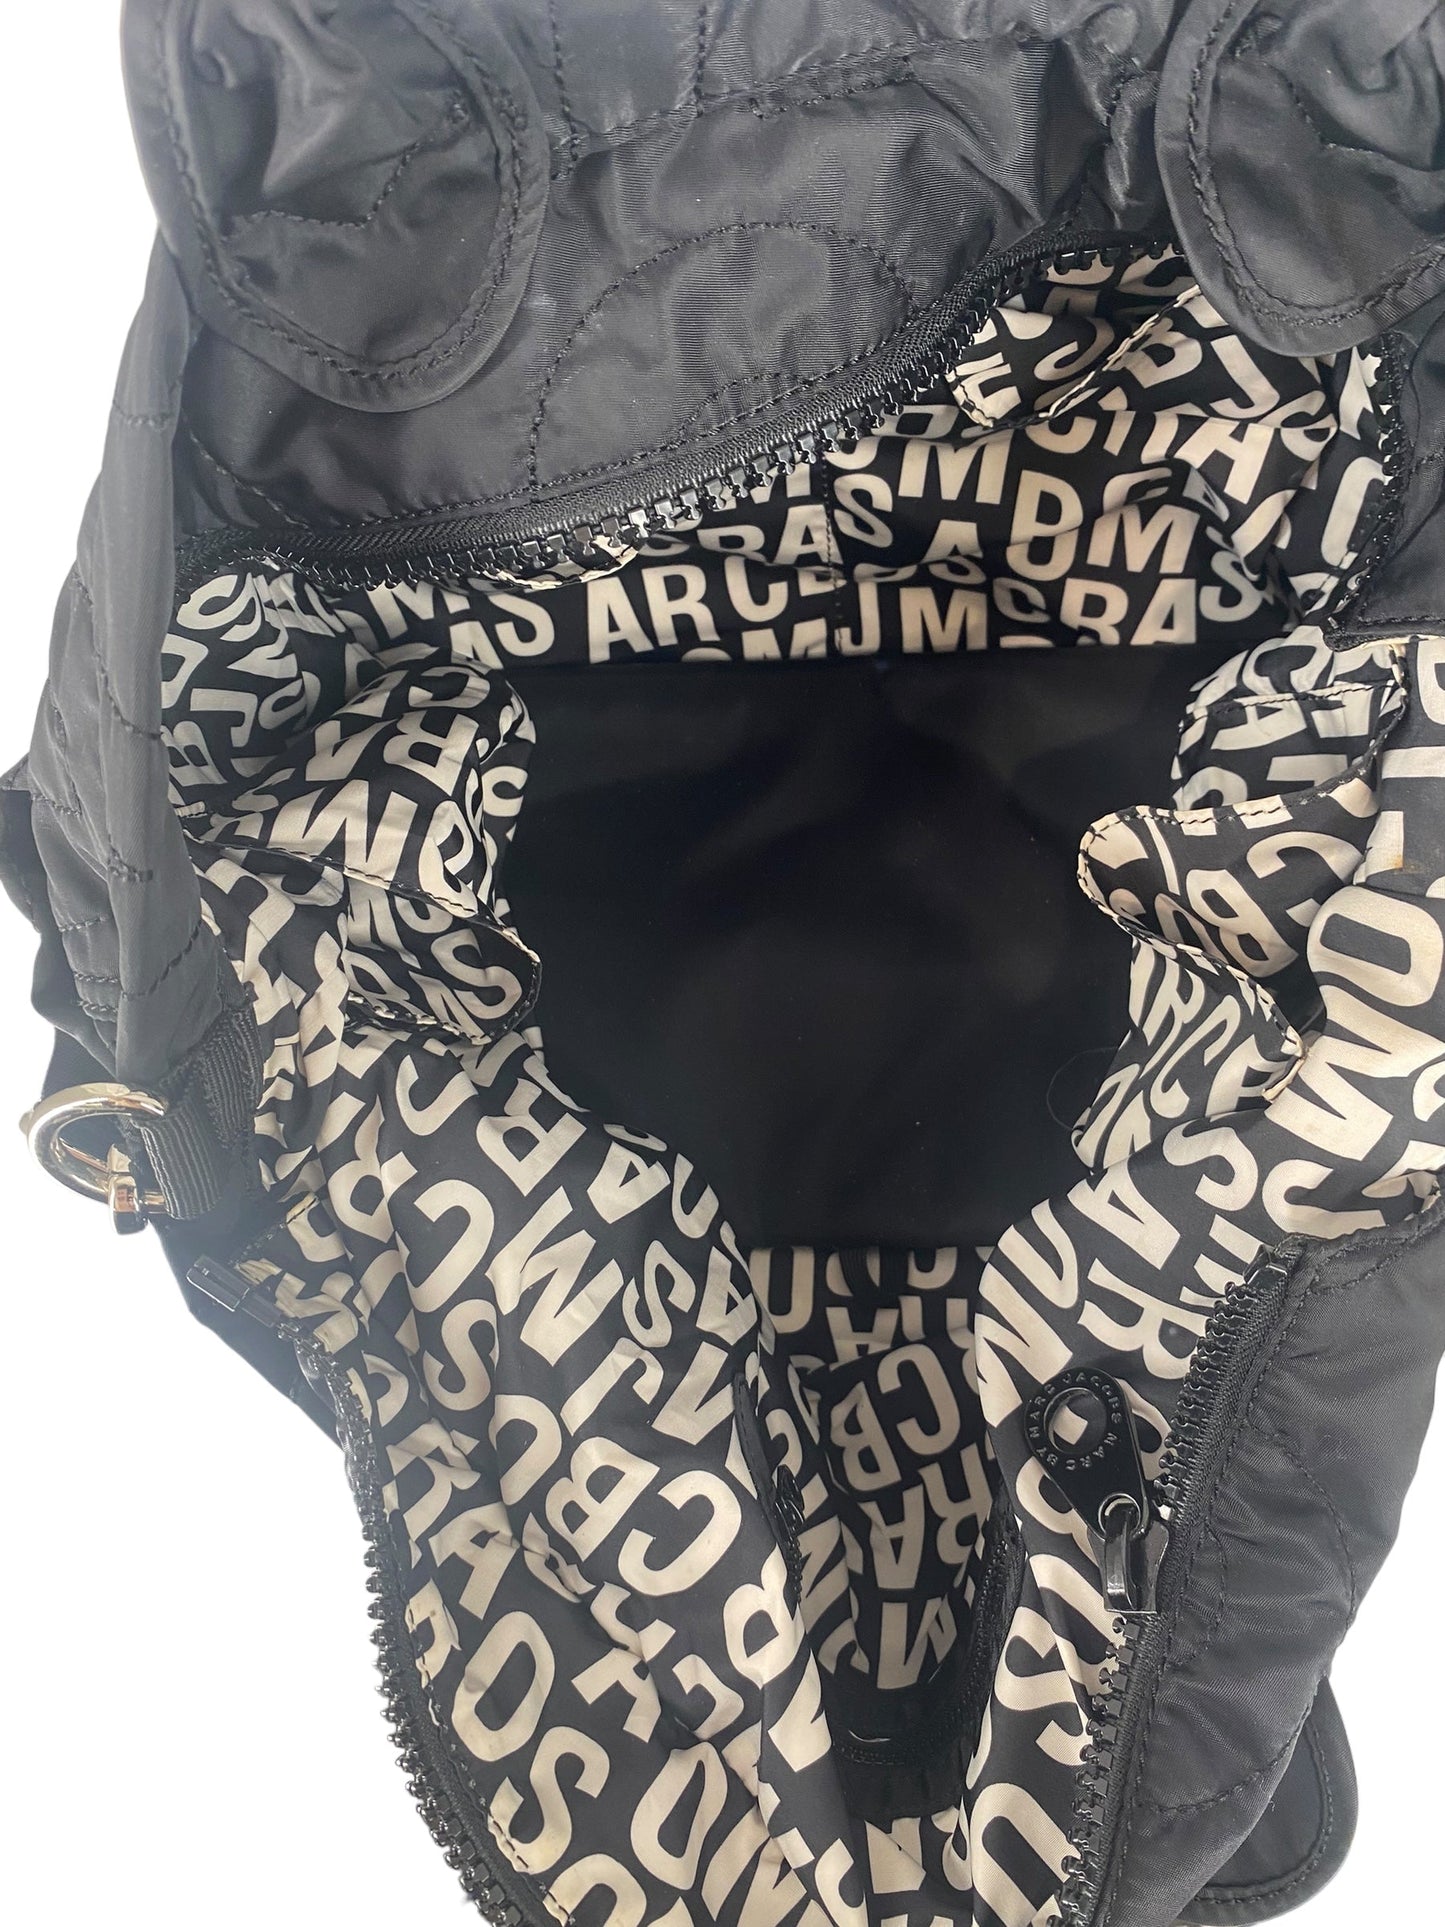 Handbag Designer Marc By Marc Jacobs, Size Large